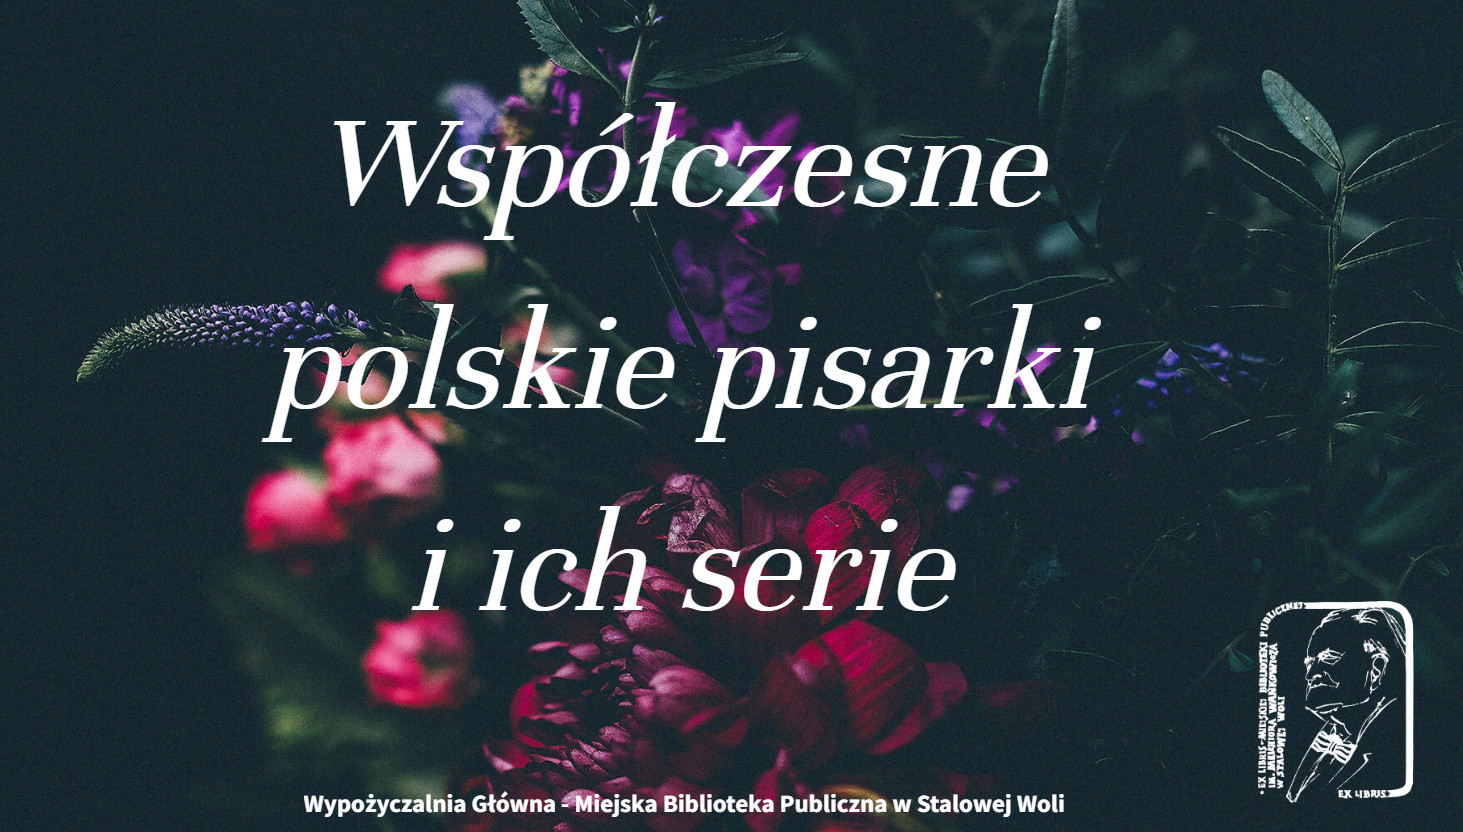 Polskie pisarki współczesne:  Agata Przybyłek